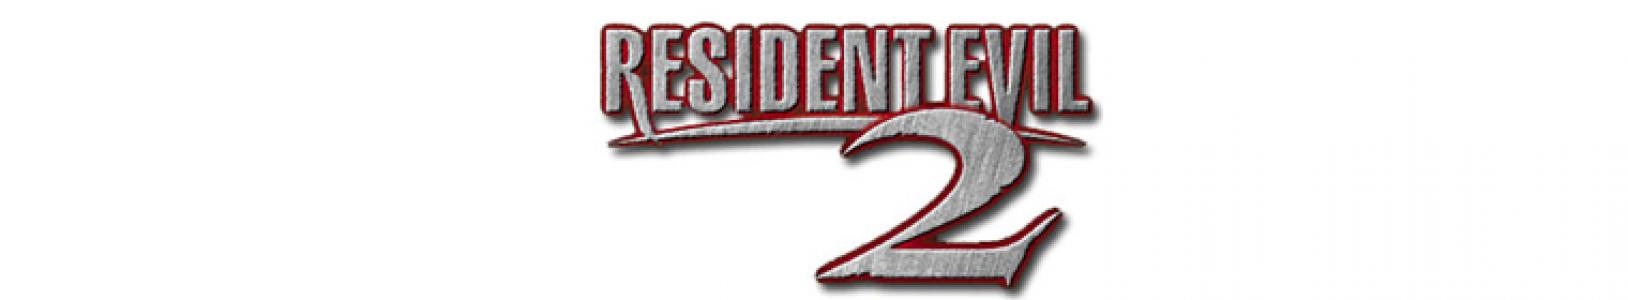 Resident Evil 2 banner